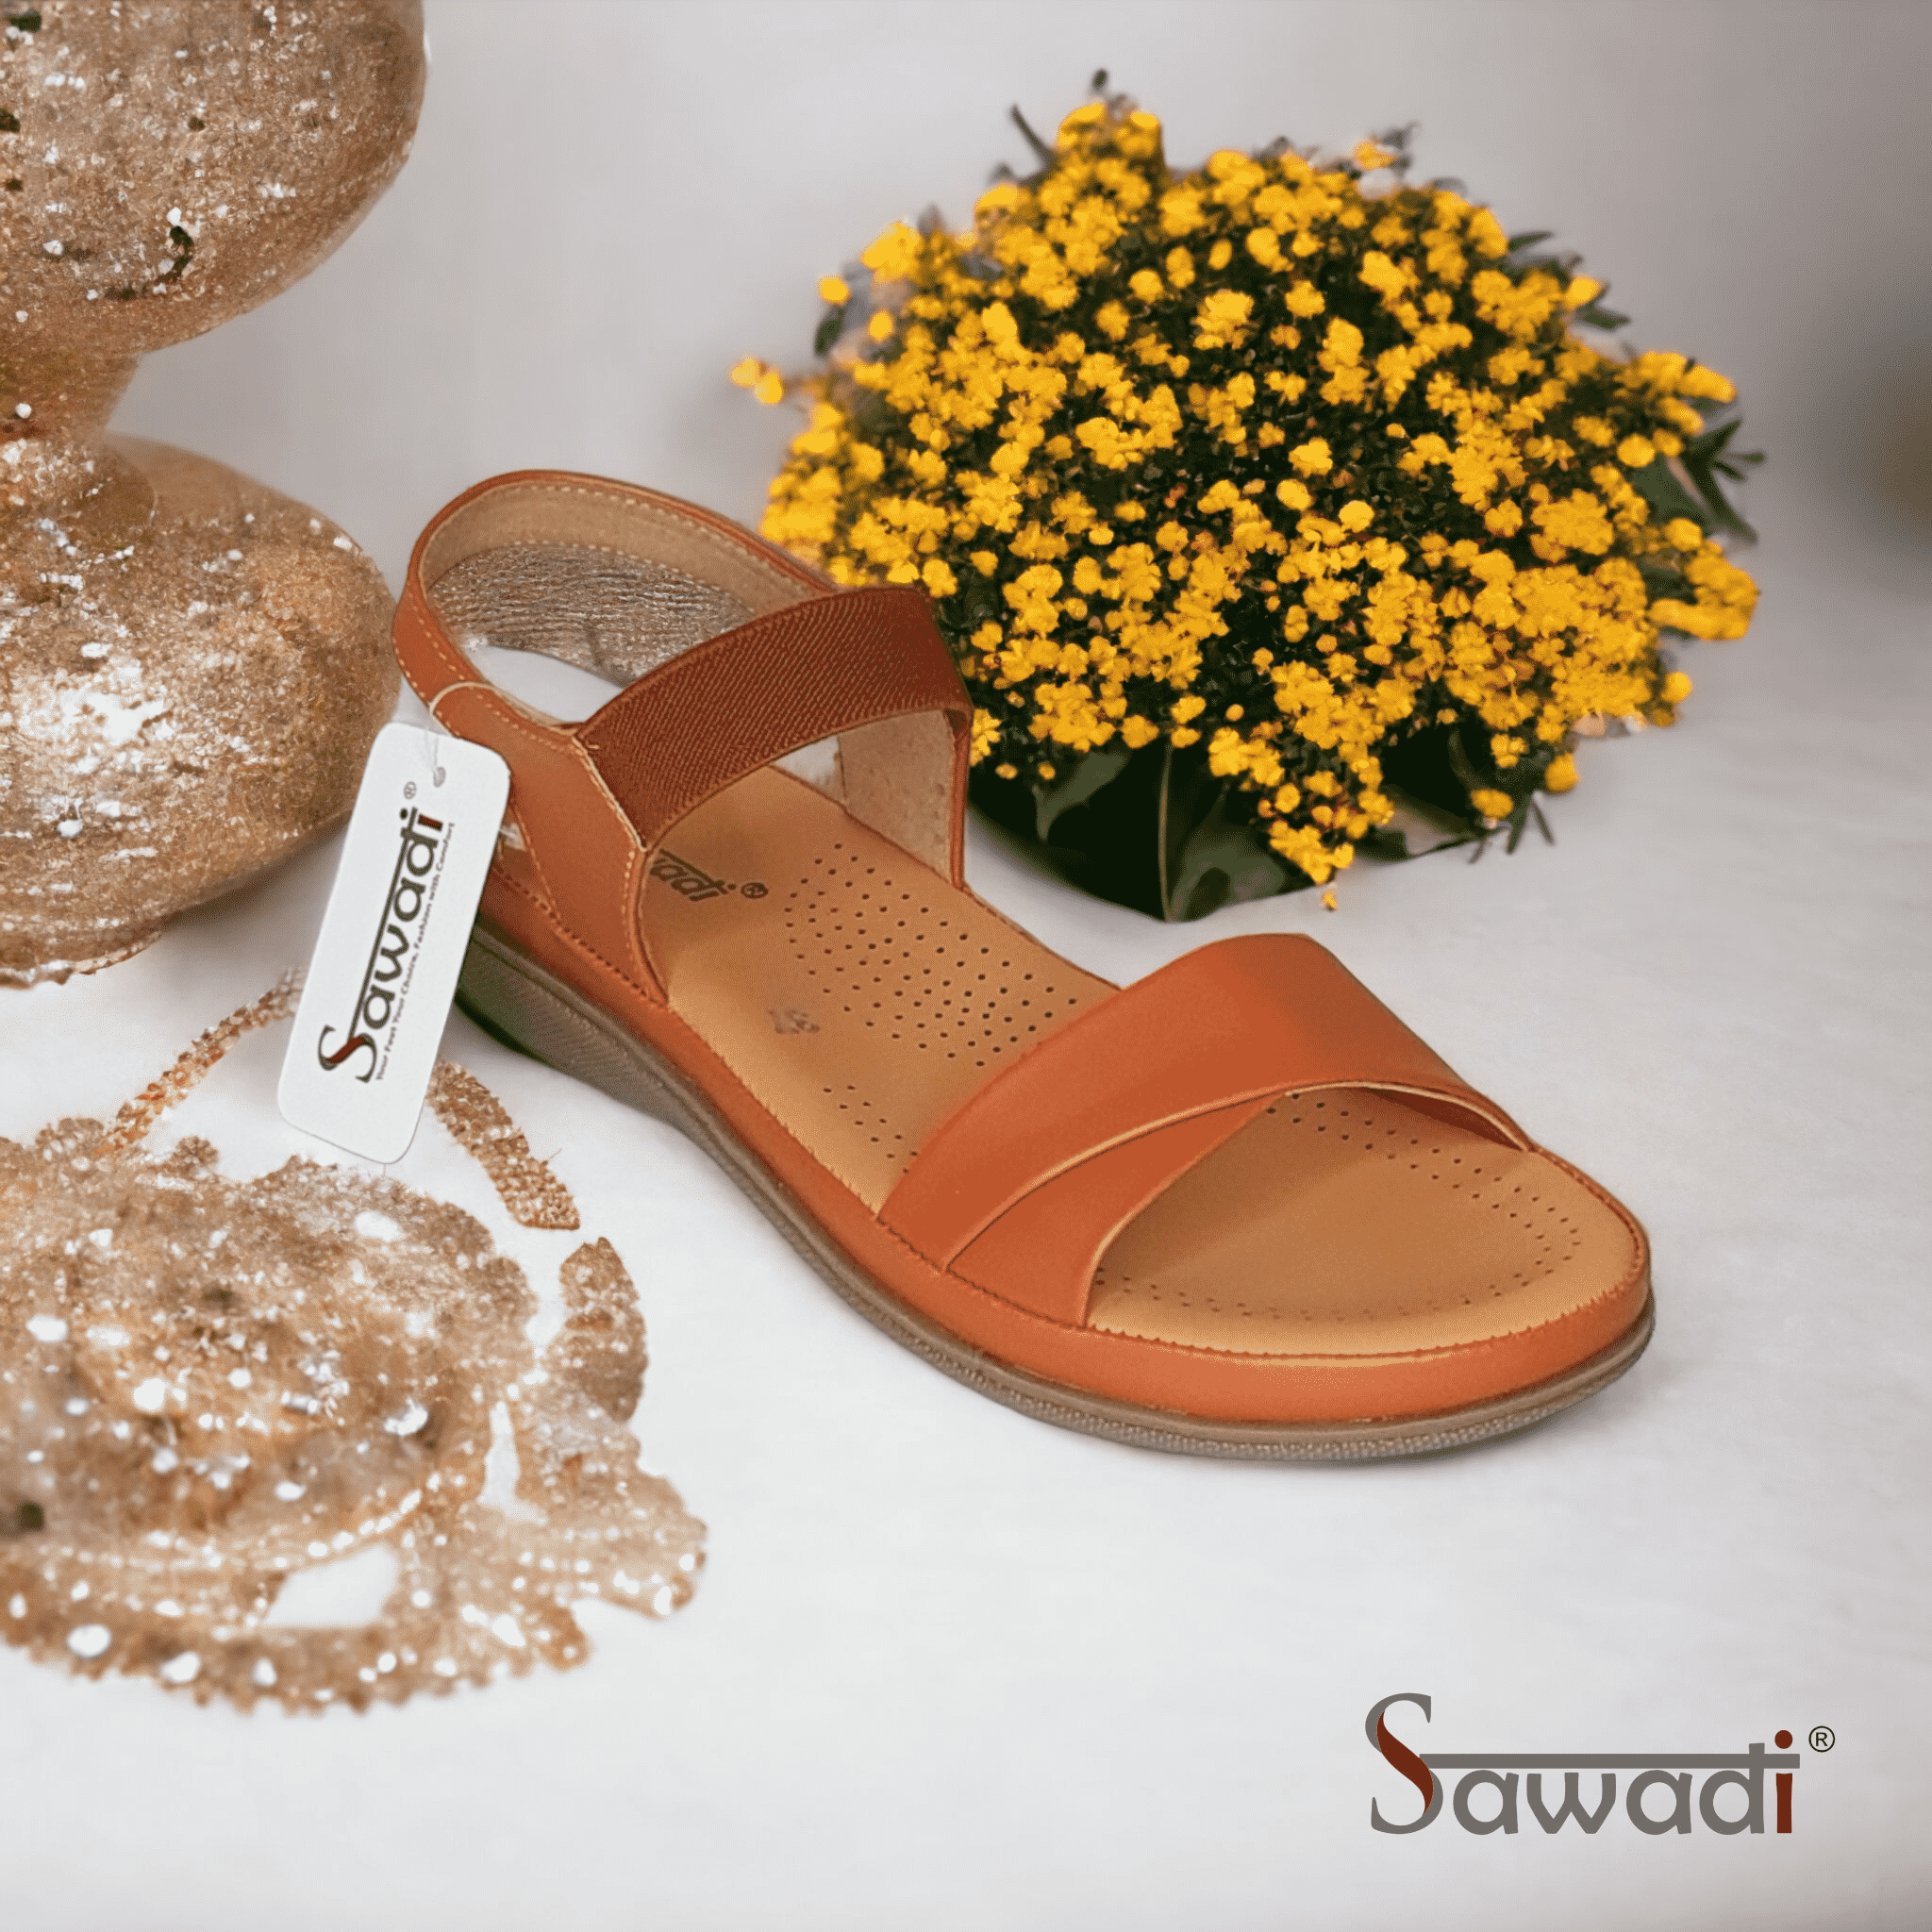 Sawadi Women Tan TPR sandals